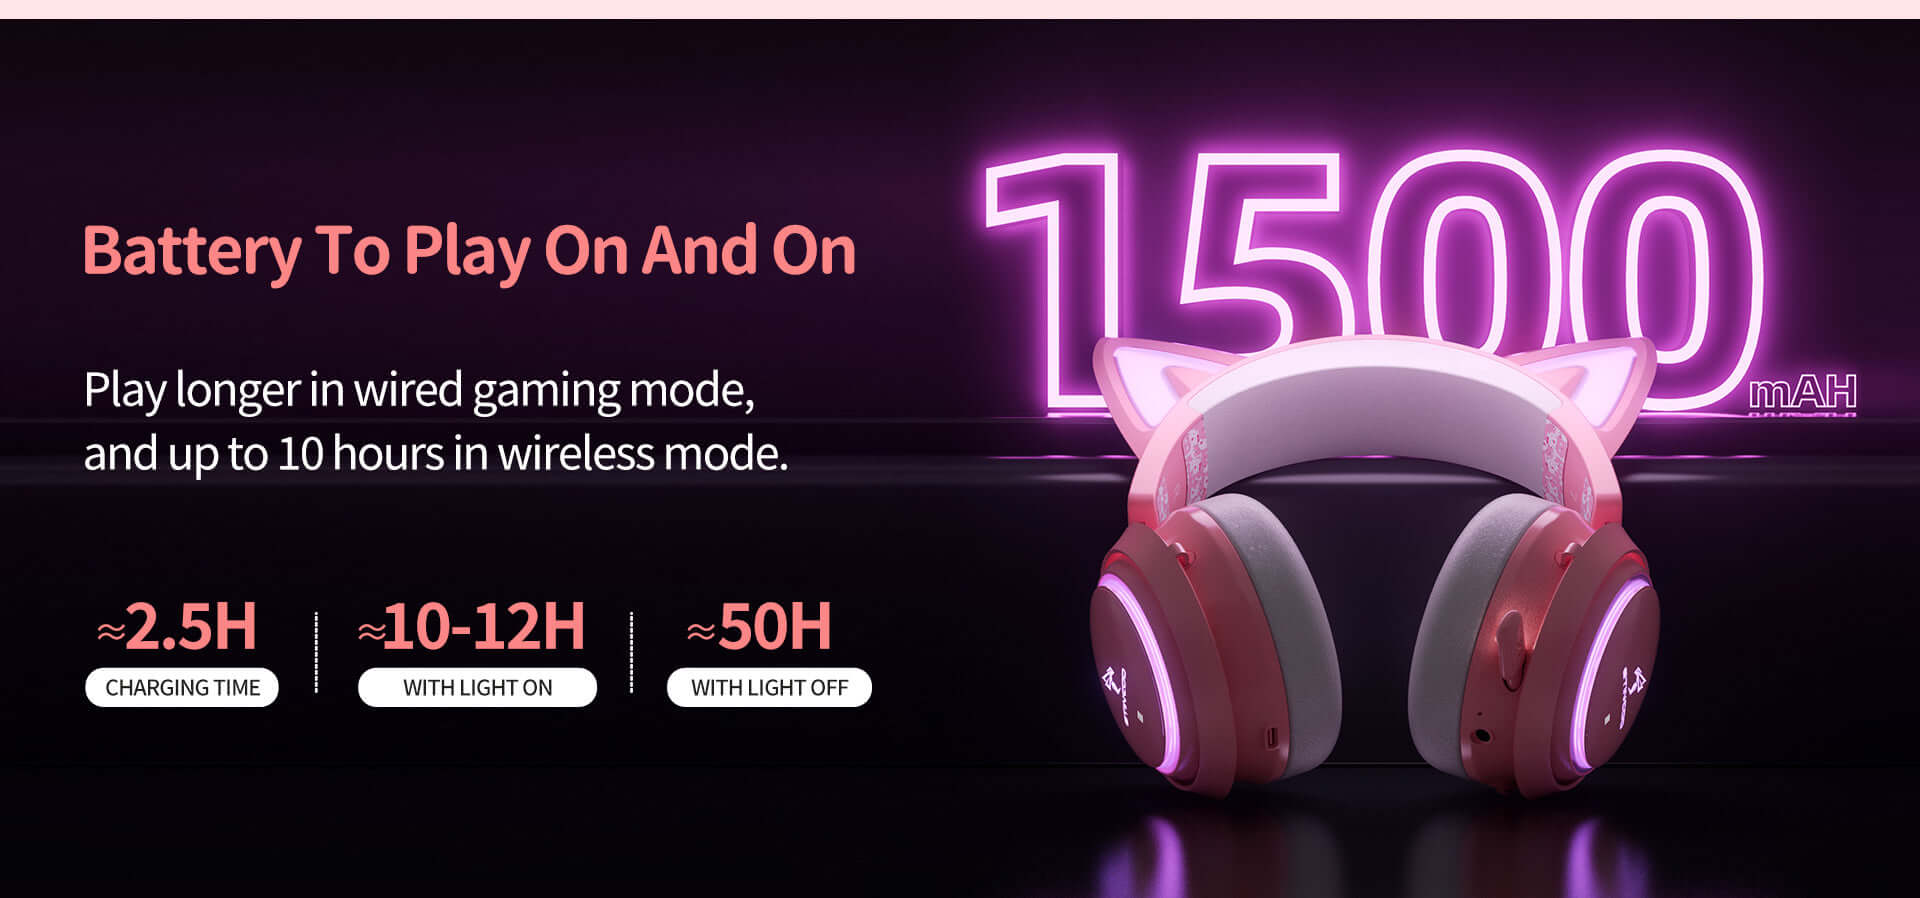 SOMIC GS510Pro Fone de ouvido para gatos, 2,4G/Bluetooth sem fio para jogos  com luz RGB, fone de ouvido bonito com microfone retrátil, 8 horas de  reprodução, som surround 7.1 para PS5/PS4, PC (